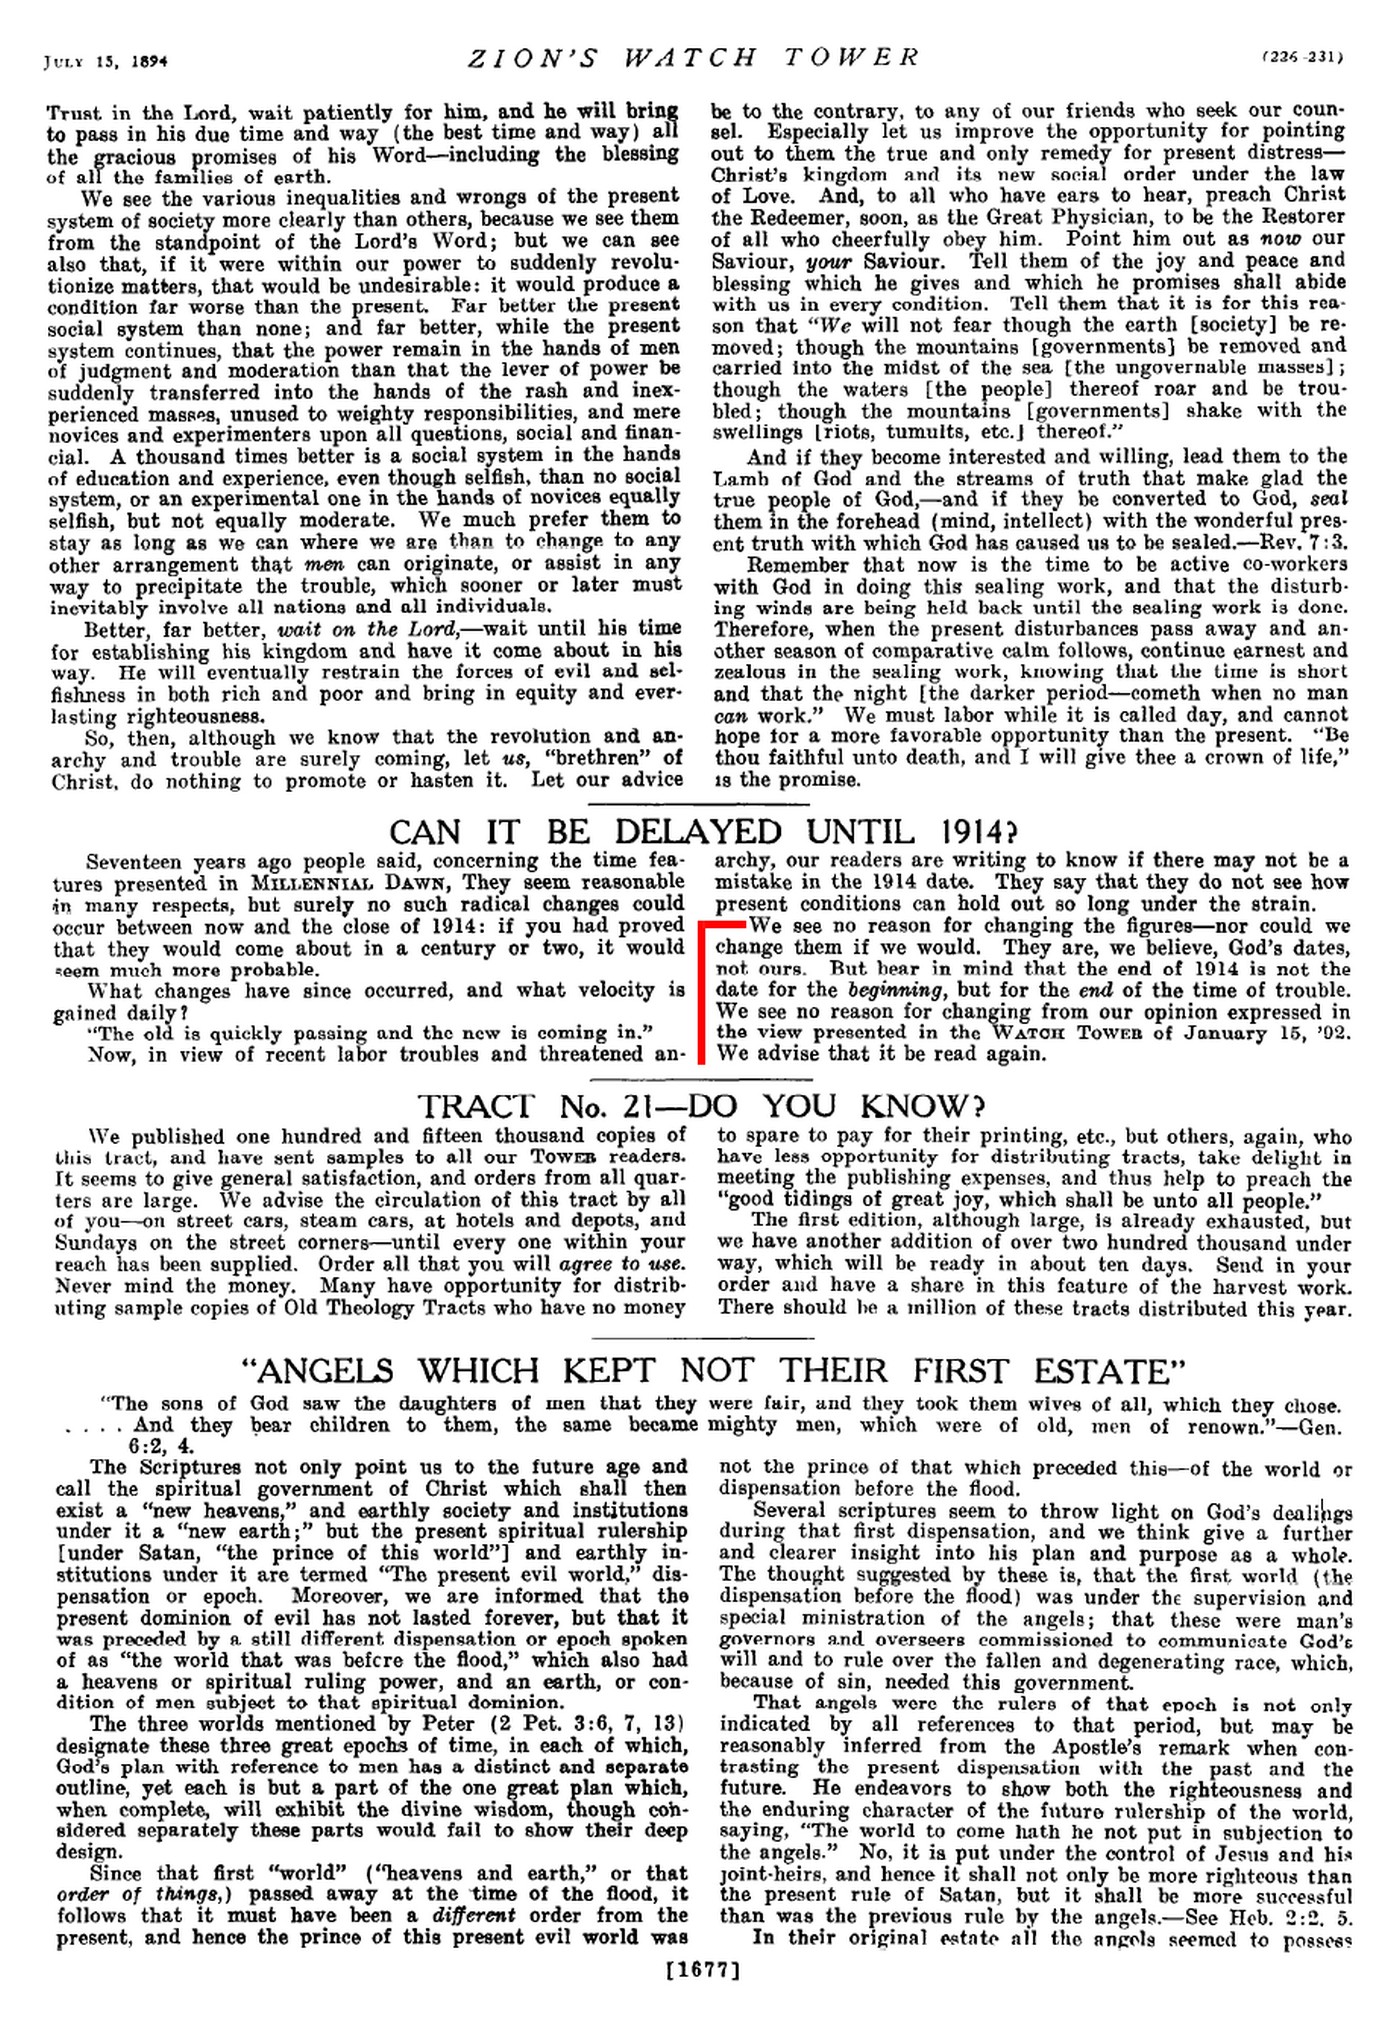 Les fins du monde et les prédictions annoncées par la Watchtower et le collège central - Page 2 1894-Zions-Watch-Tower-07-15-p226